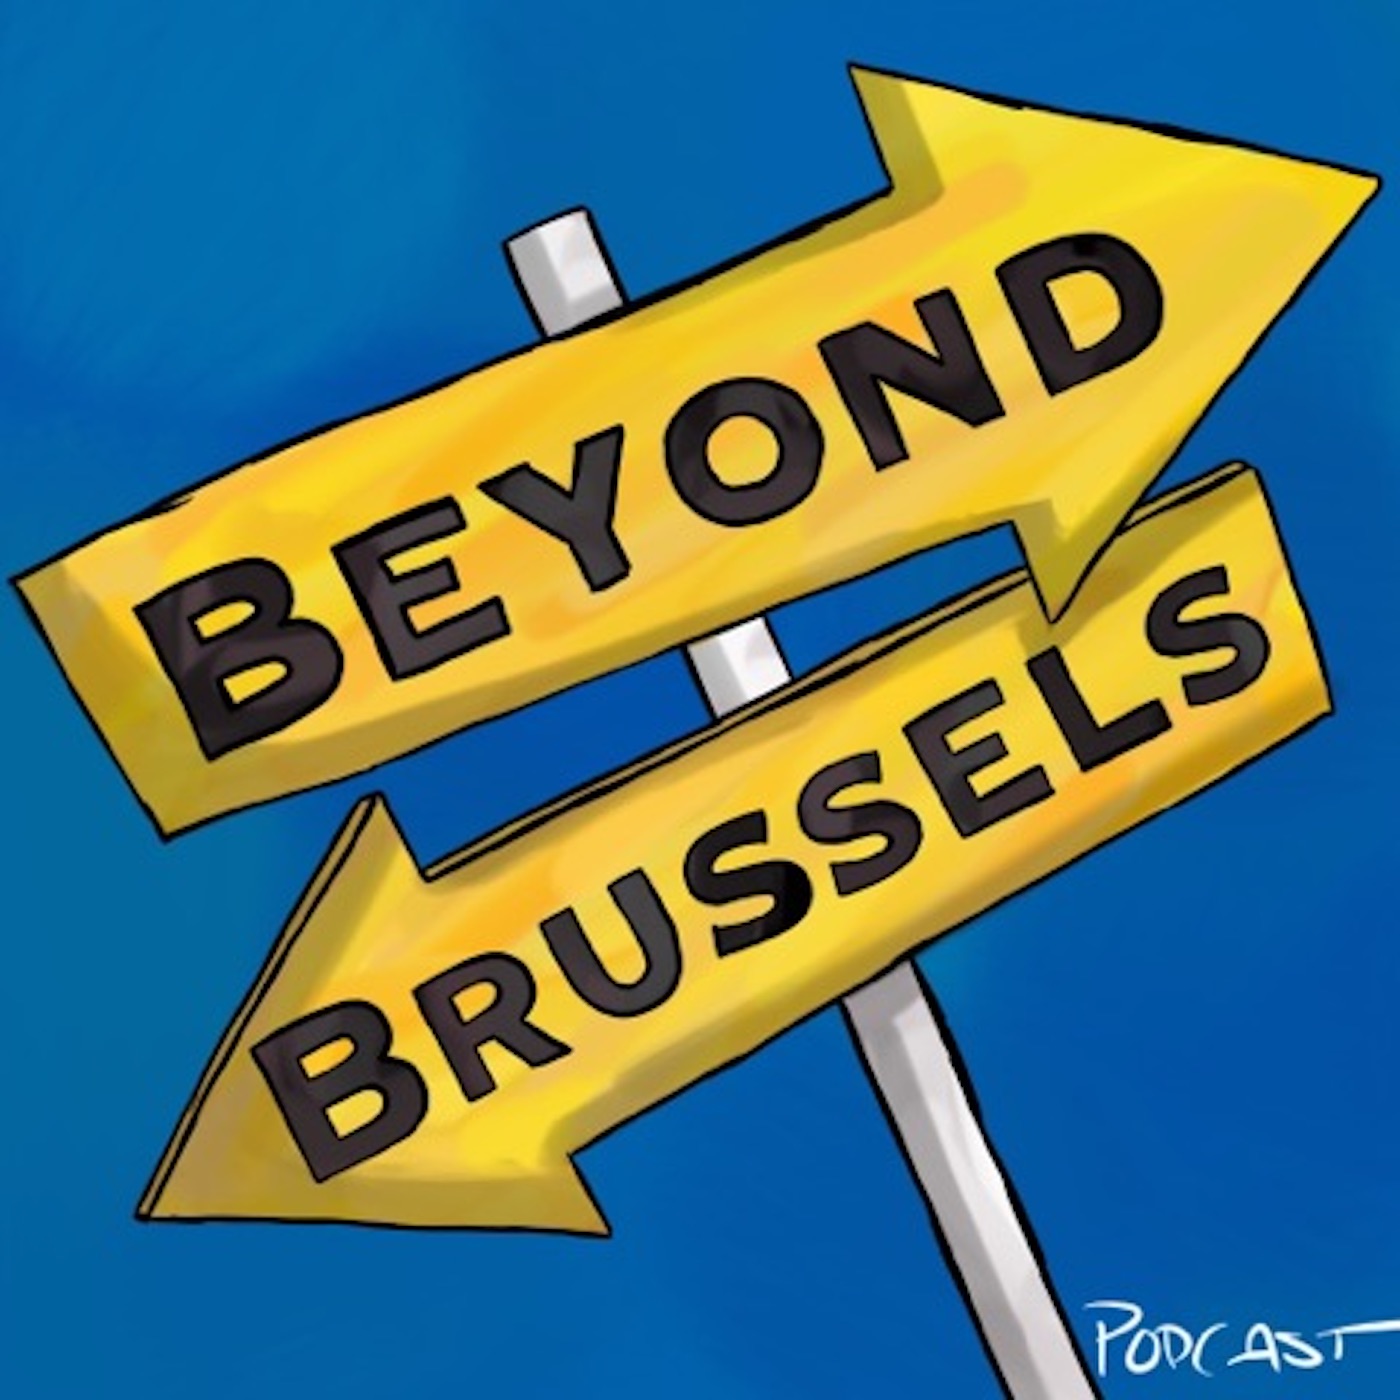 Beyond Brussels